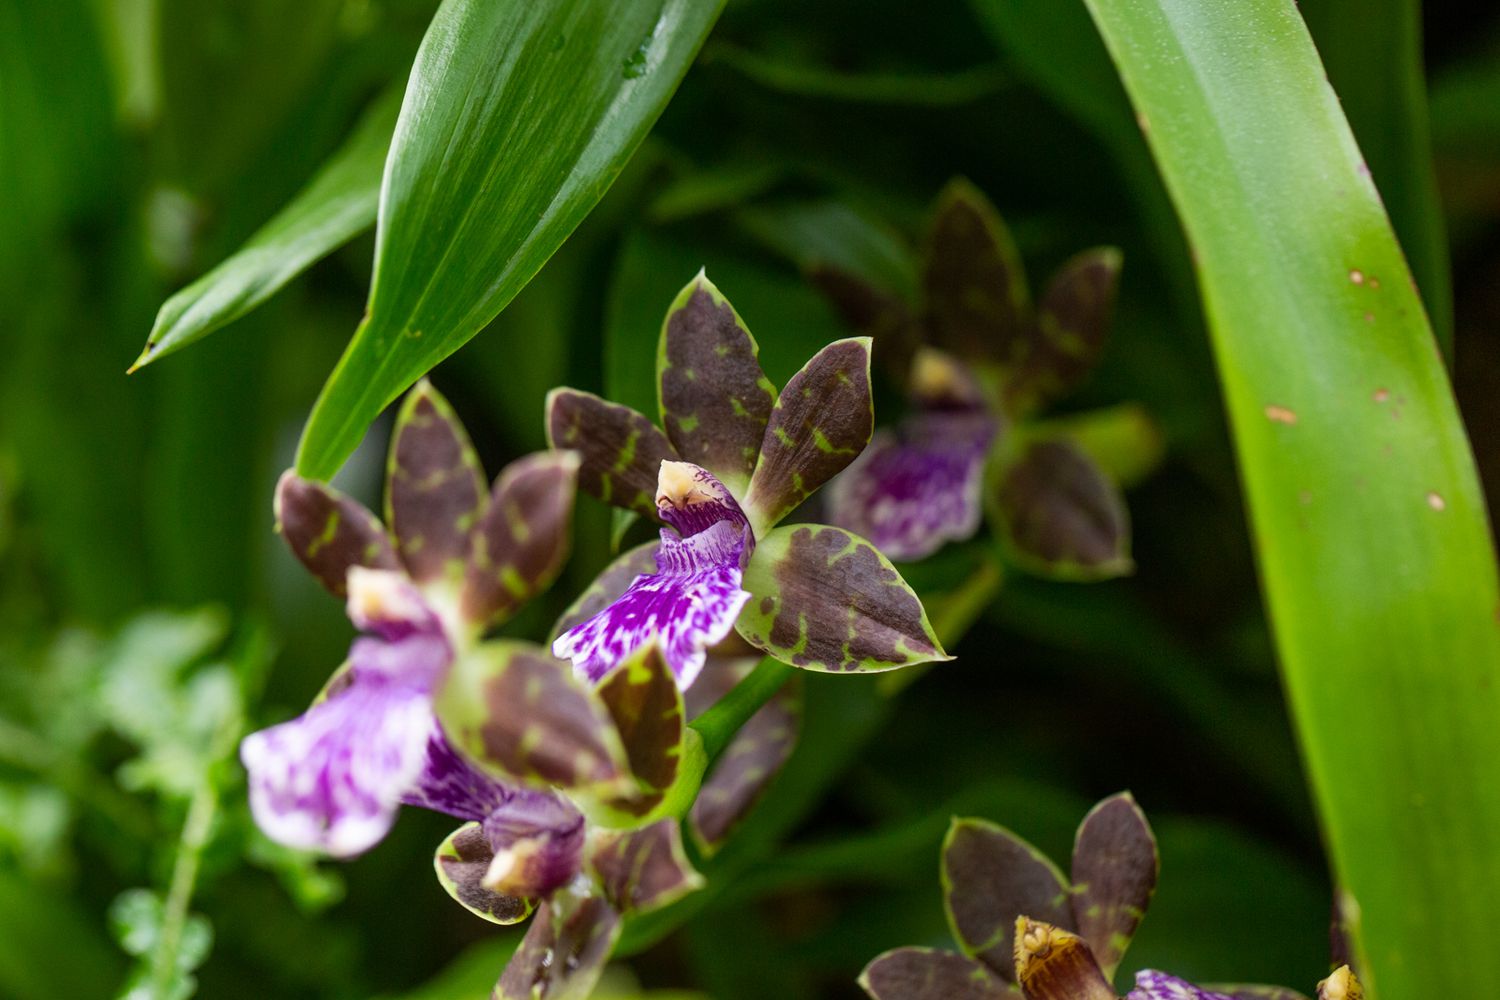 Zygopetalum-Orchideenblüten mit weinroten, grünen und violetten Blütenblättern unter langen Blättern